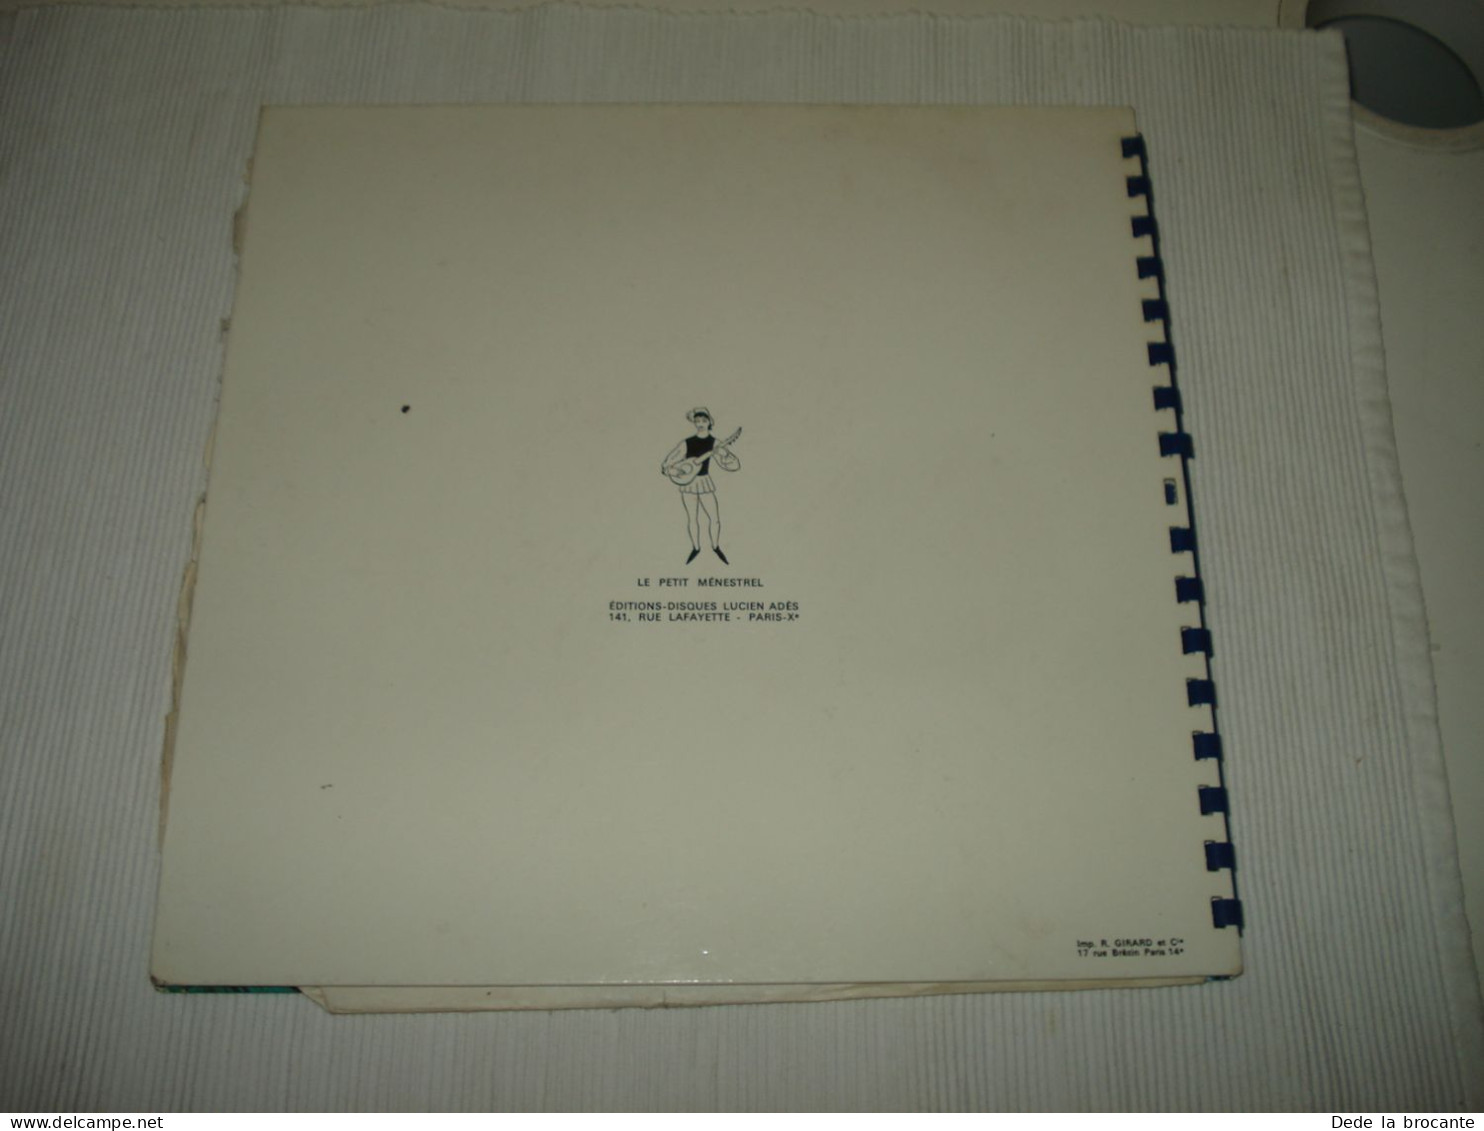 B14 / Livre-disque Disney Merlin L'enchanteur 33T - 10"- ALB 74 - FR 19??  NM/VG - Speciale Formaten